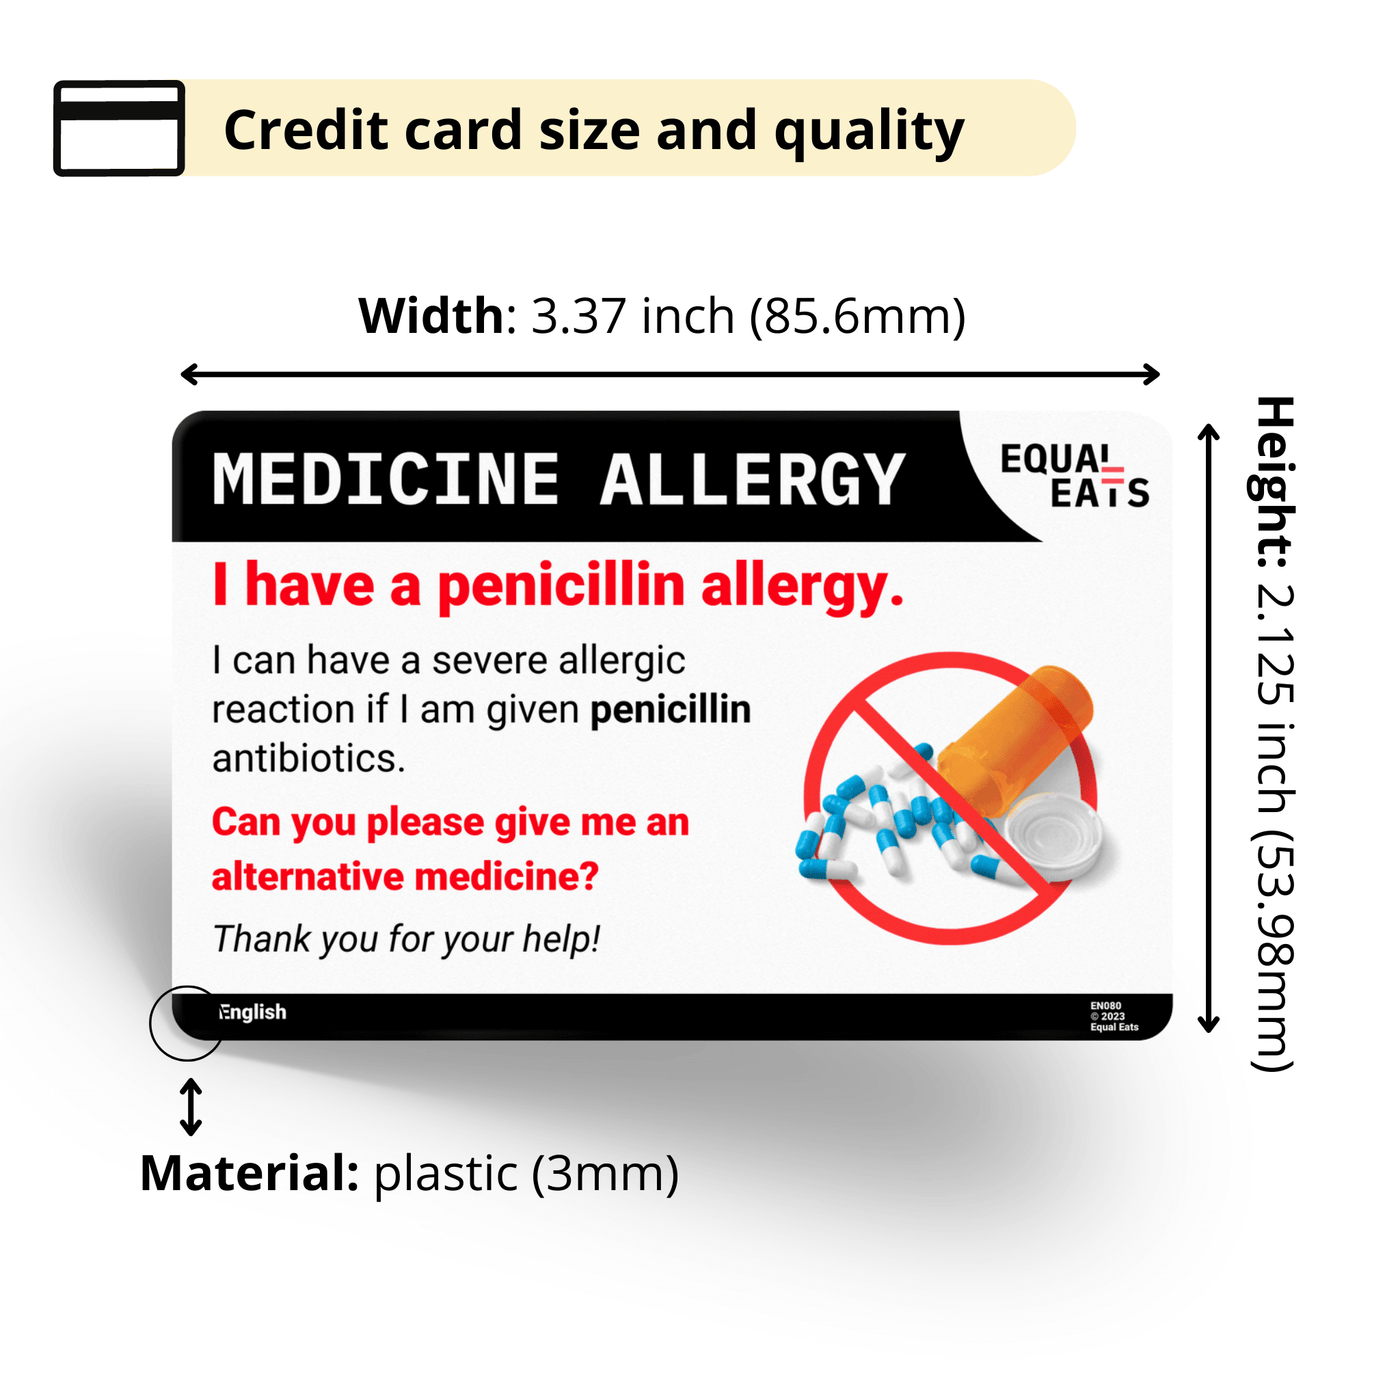 Thai Penicillin Allergy Card